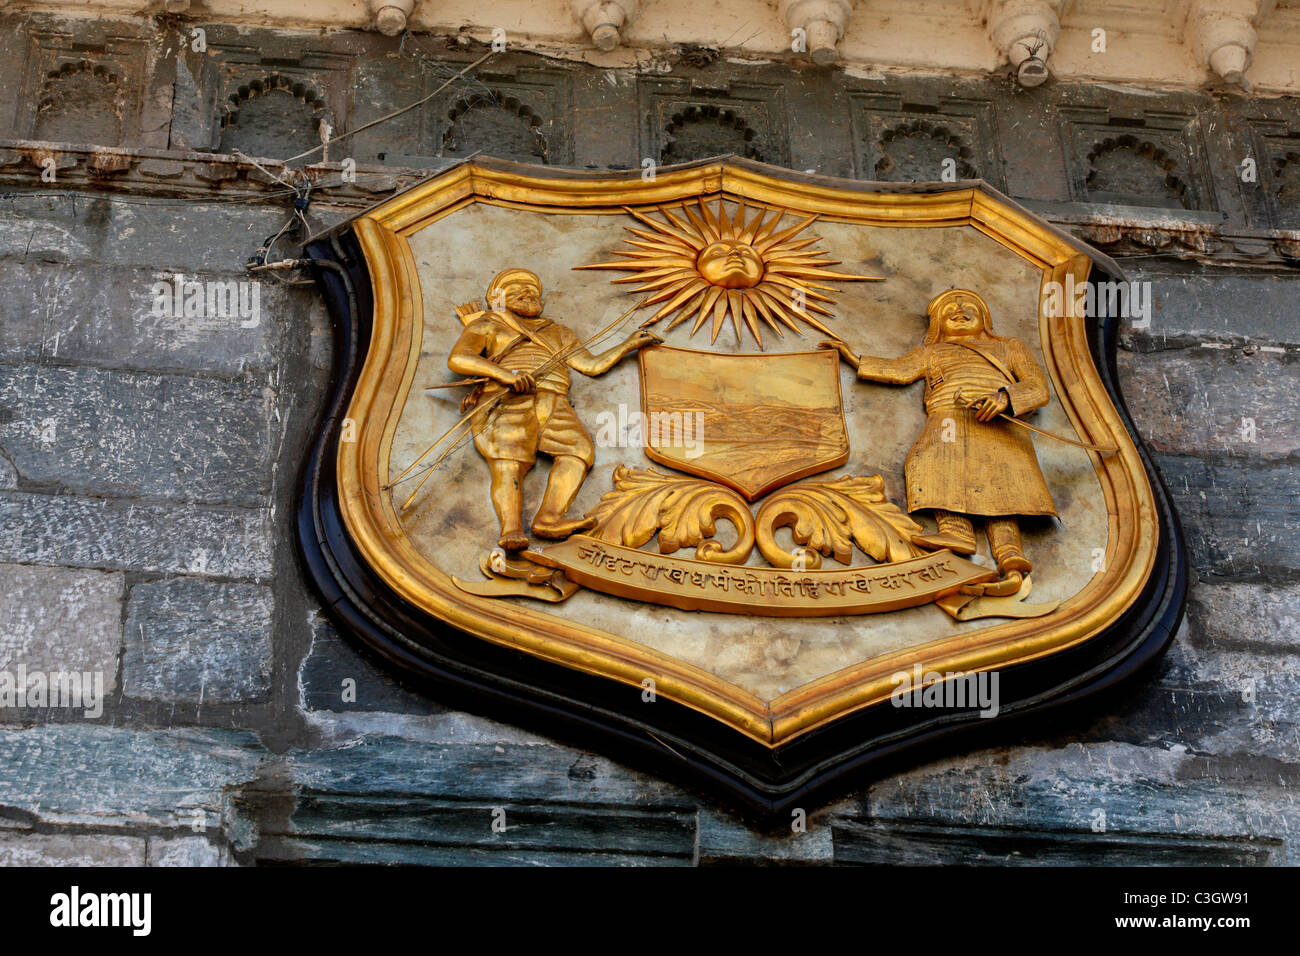 L'Emblème royale de Mewar Kingdom, Udaipur, Rajasthan, Inde Banque D'Images